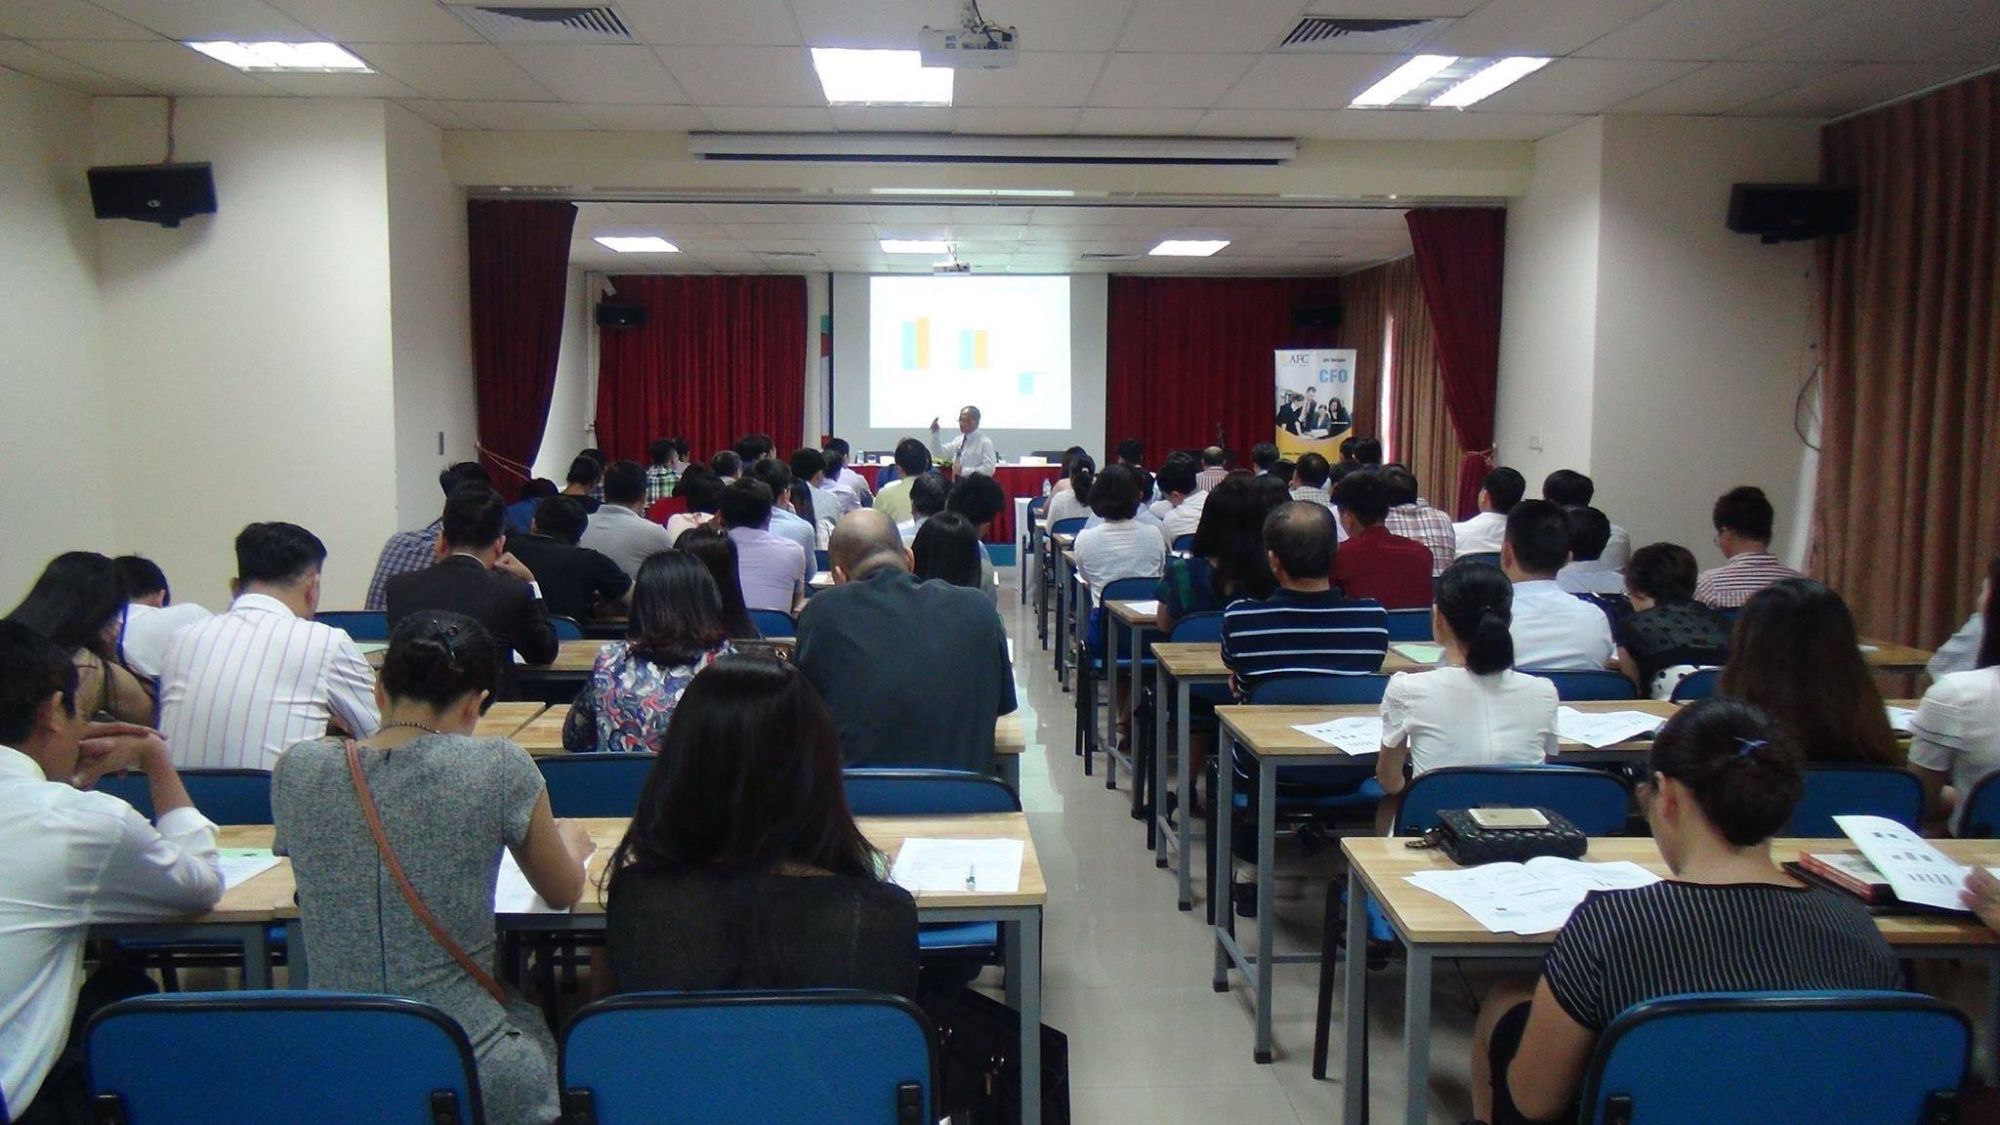 Mở lớp học trung cấp quản trị kinh doanh tại Hà Nội